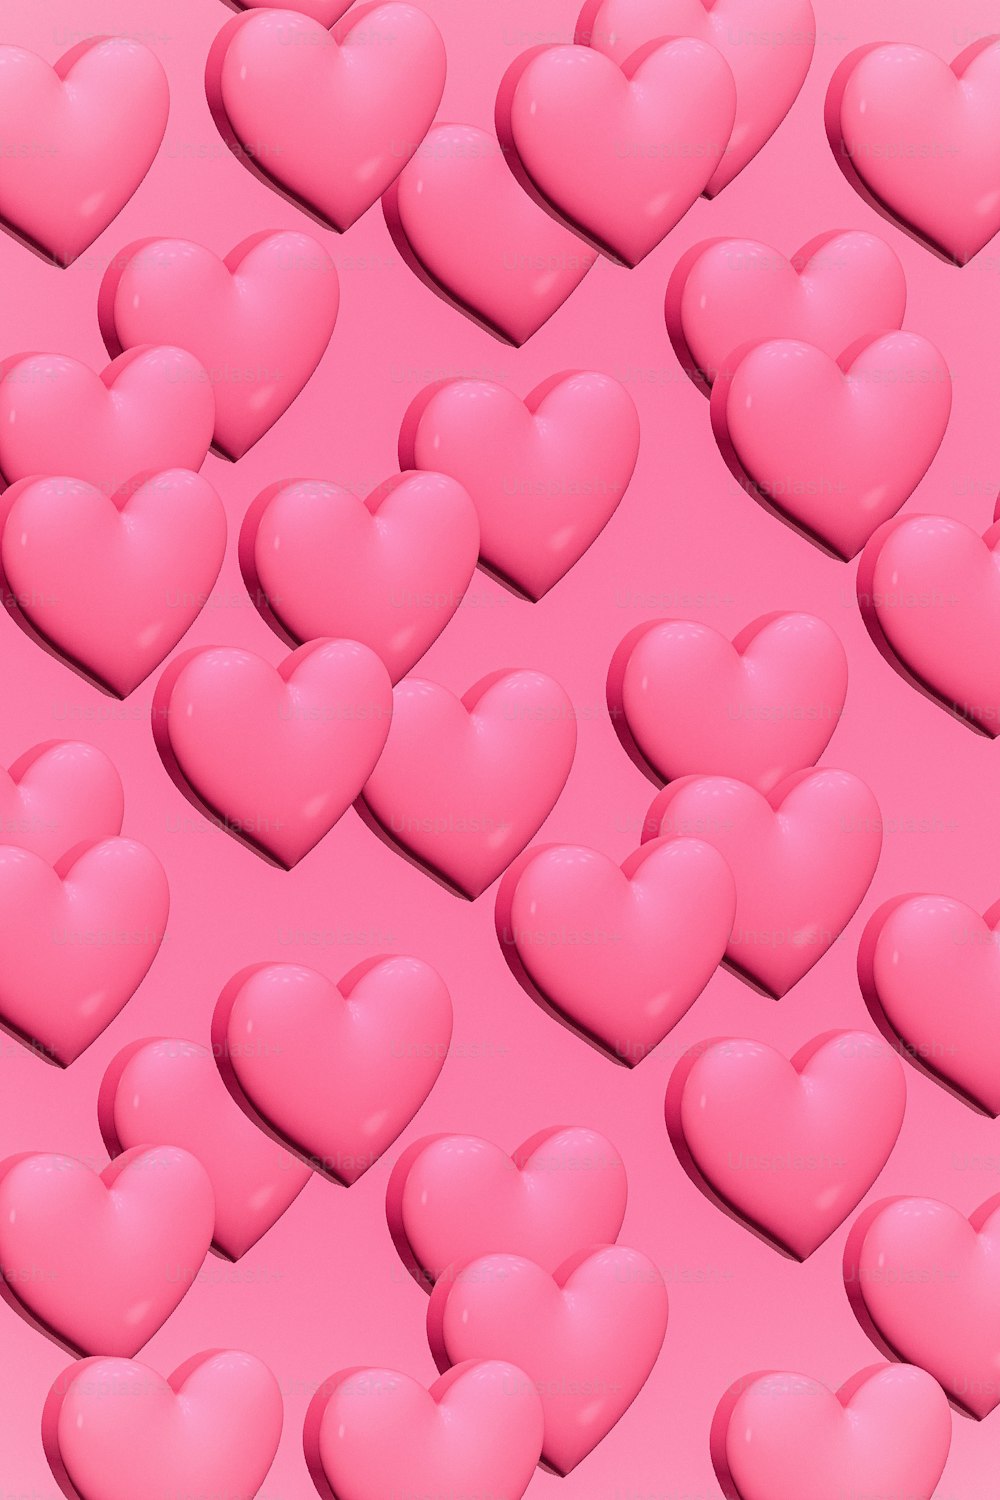 um monte de corações cor-de-rosa em um fundo rosa